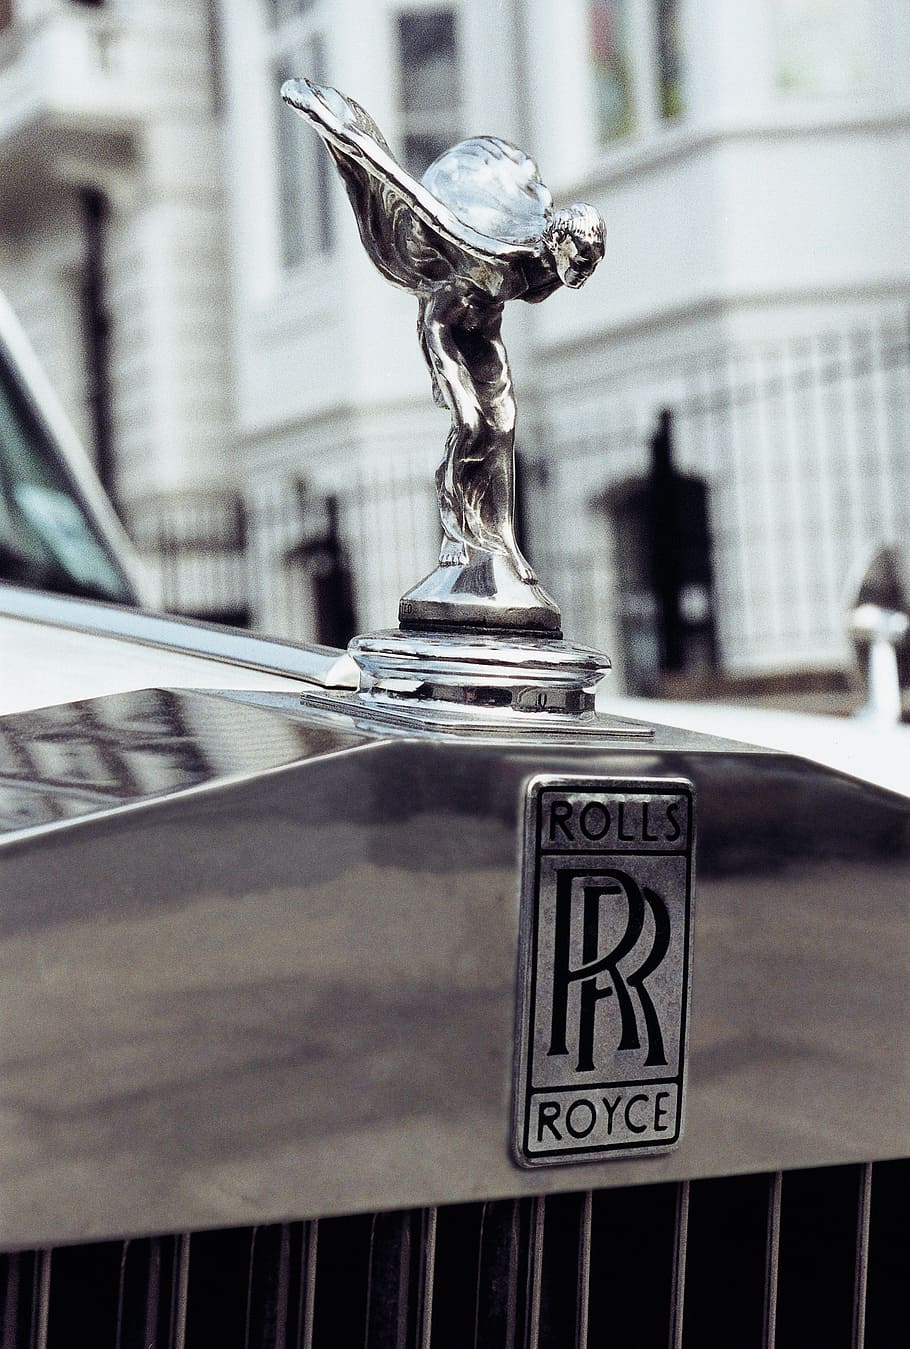 gris, rollos, Royce, vehículo, capó, ornamento, figura genial, espíritu de éxtasis, Rolls Royce, motor